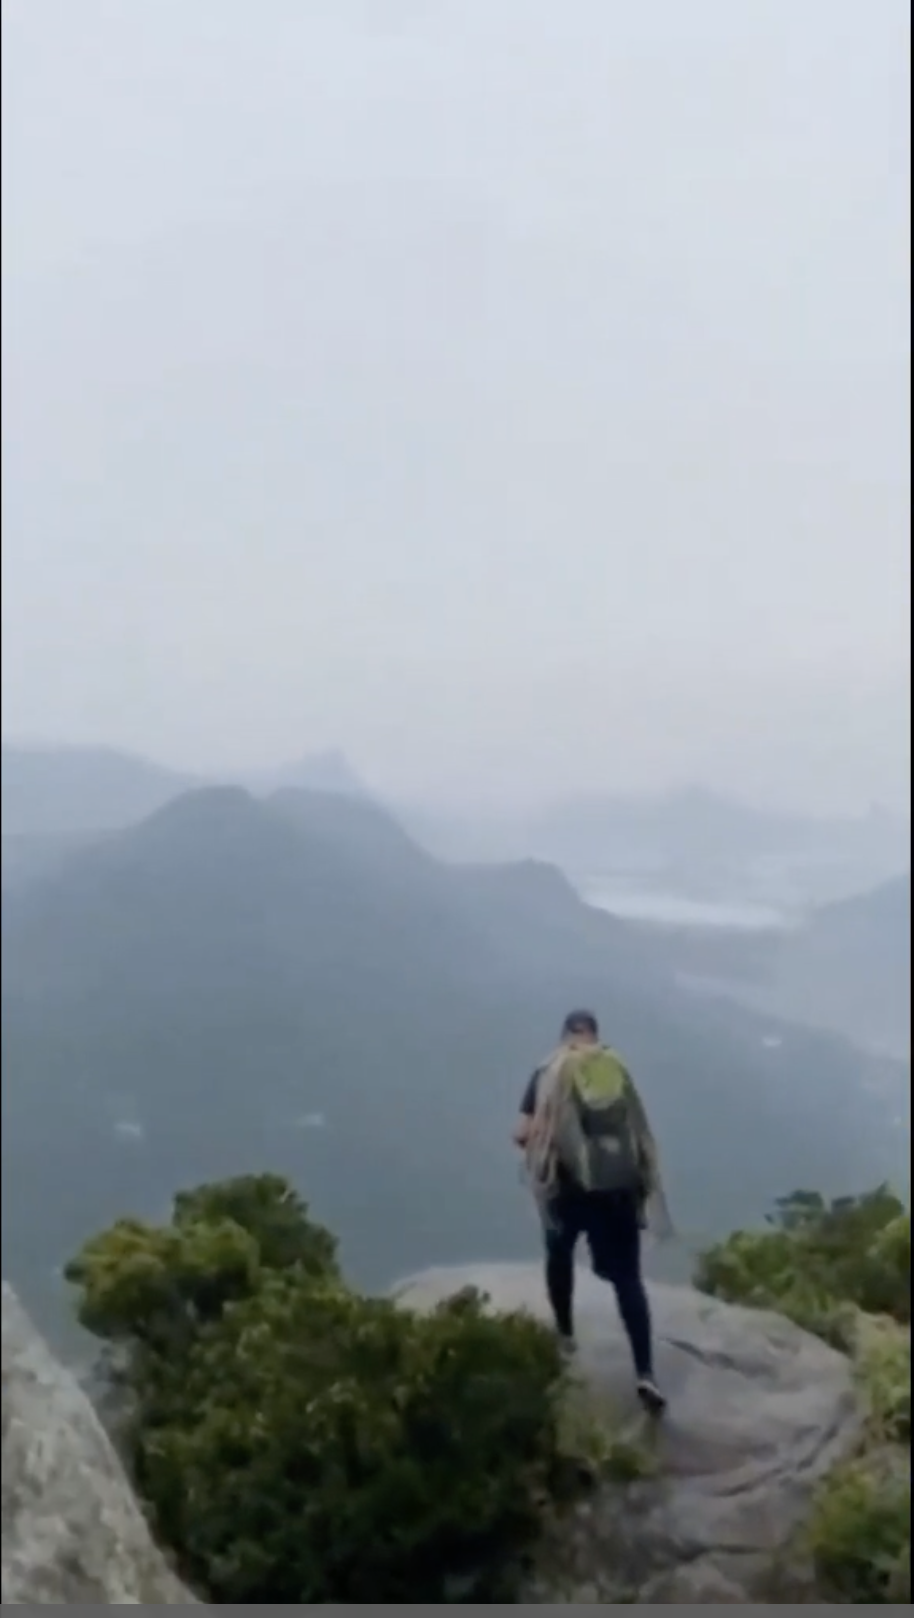 36-летний экскурсовод погиб от удара молнии на вершине скалы: туристка случайно сняла на видео его последние моменты жизни